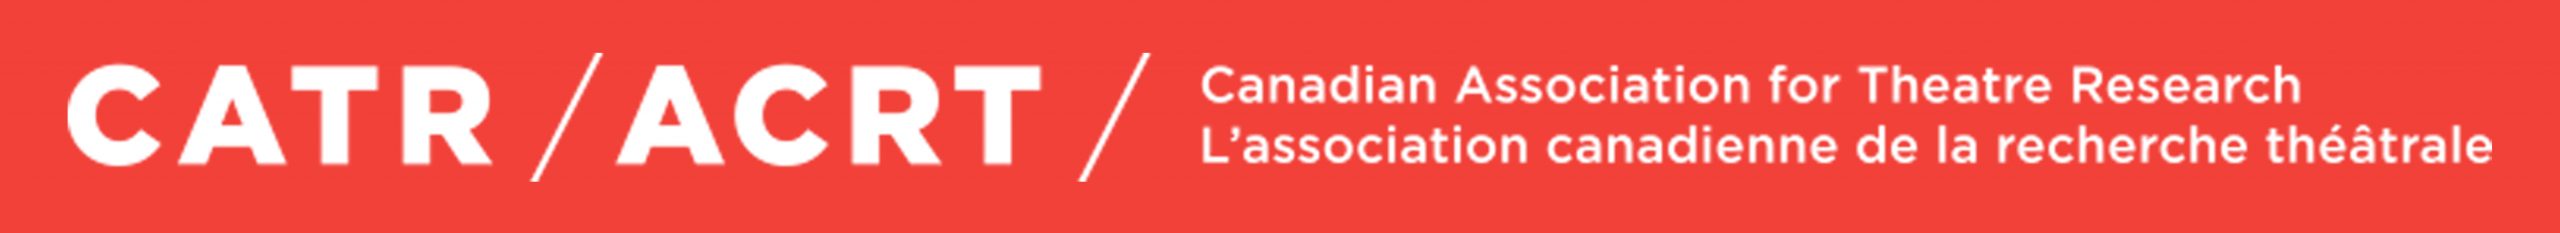 CATR/ACRT - Canadian Association for Theatre Research / L'association canadienne de la recherche theatrale